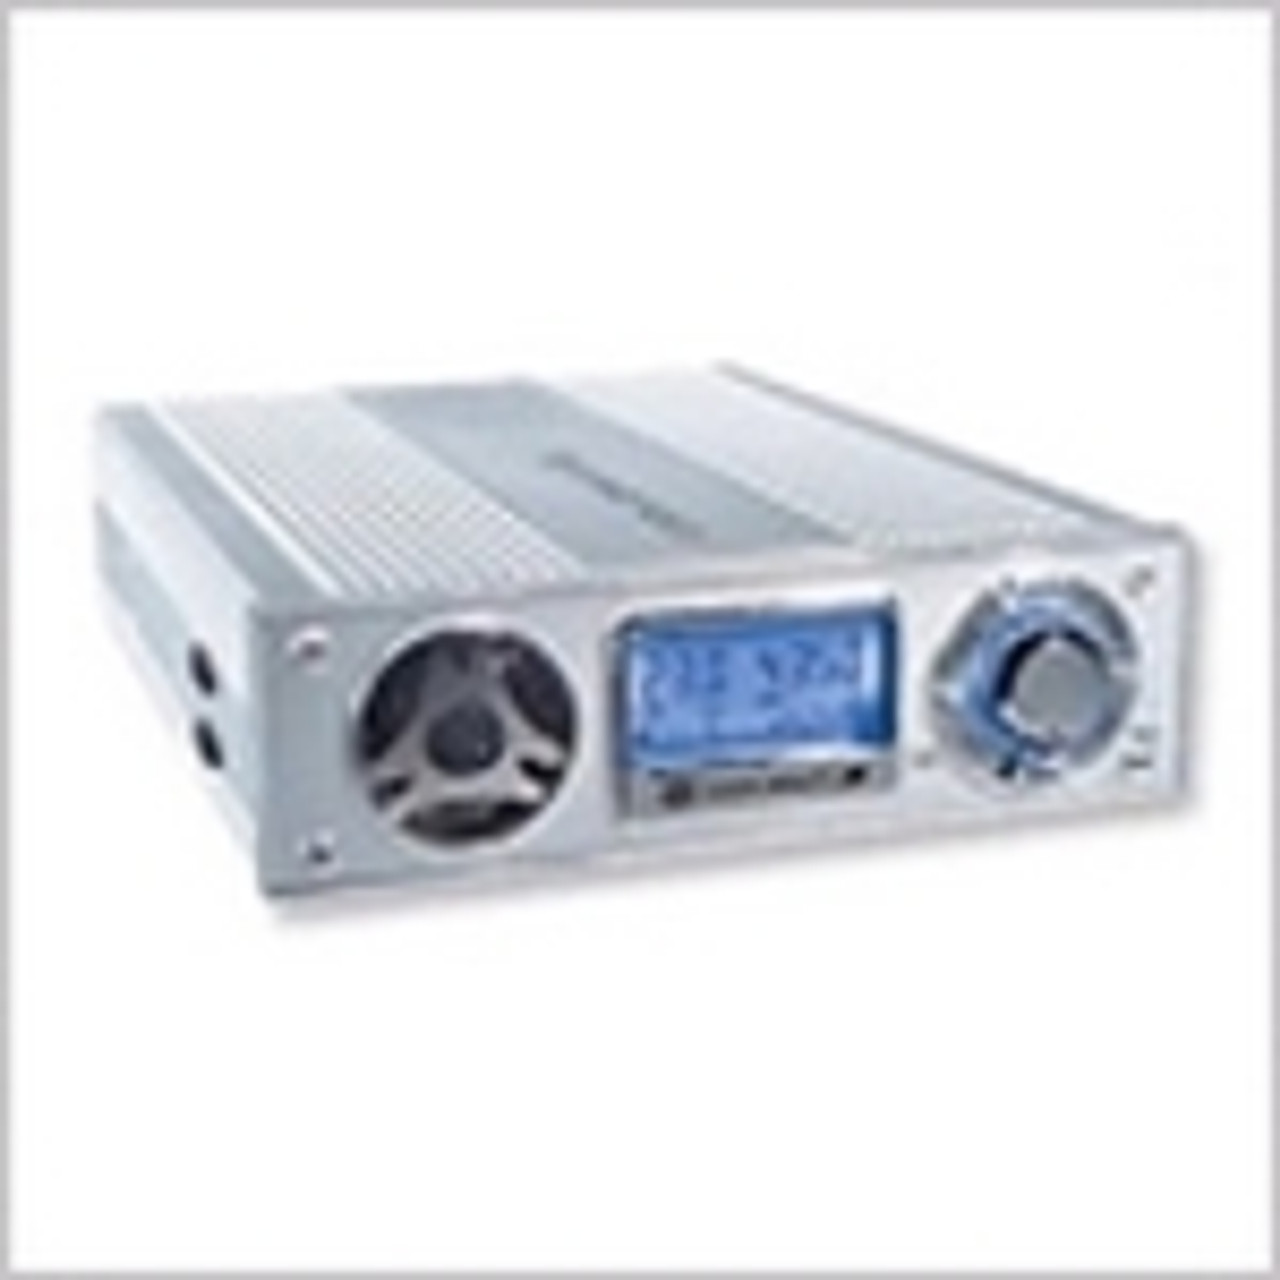 LHD-V04-U1 Cooler Master Cool Drive 4 29 dB(A) Noise